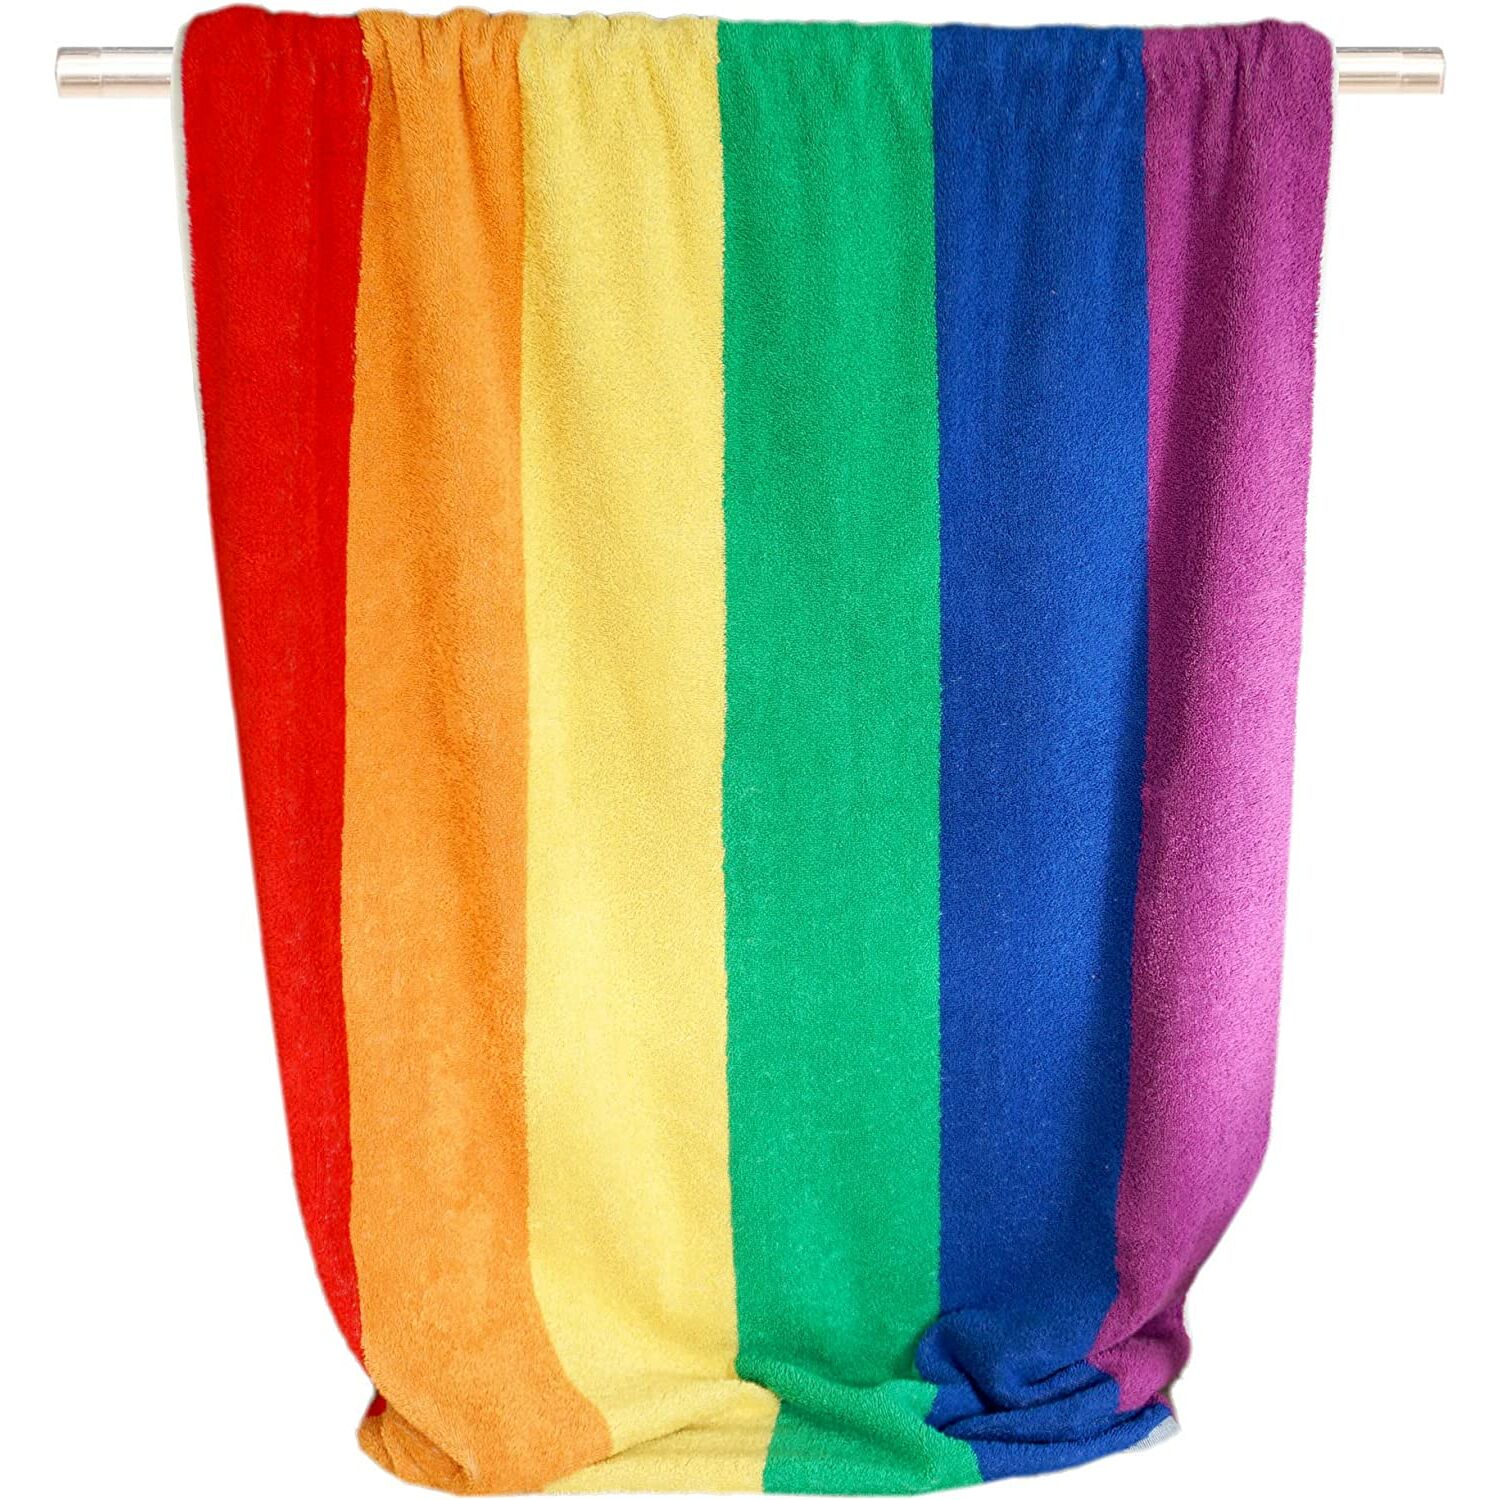 Handtücher :: Buntes Handtuch Strandtuch cm, 90x180 Regenbogen groß mit Streifen, Frottee Badetuch